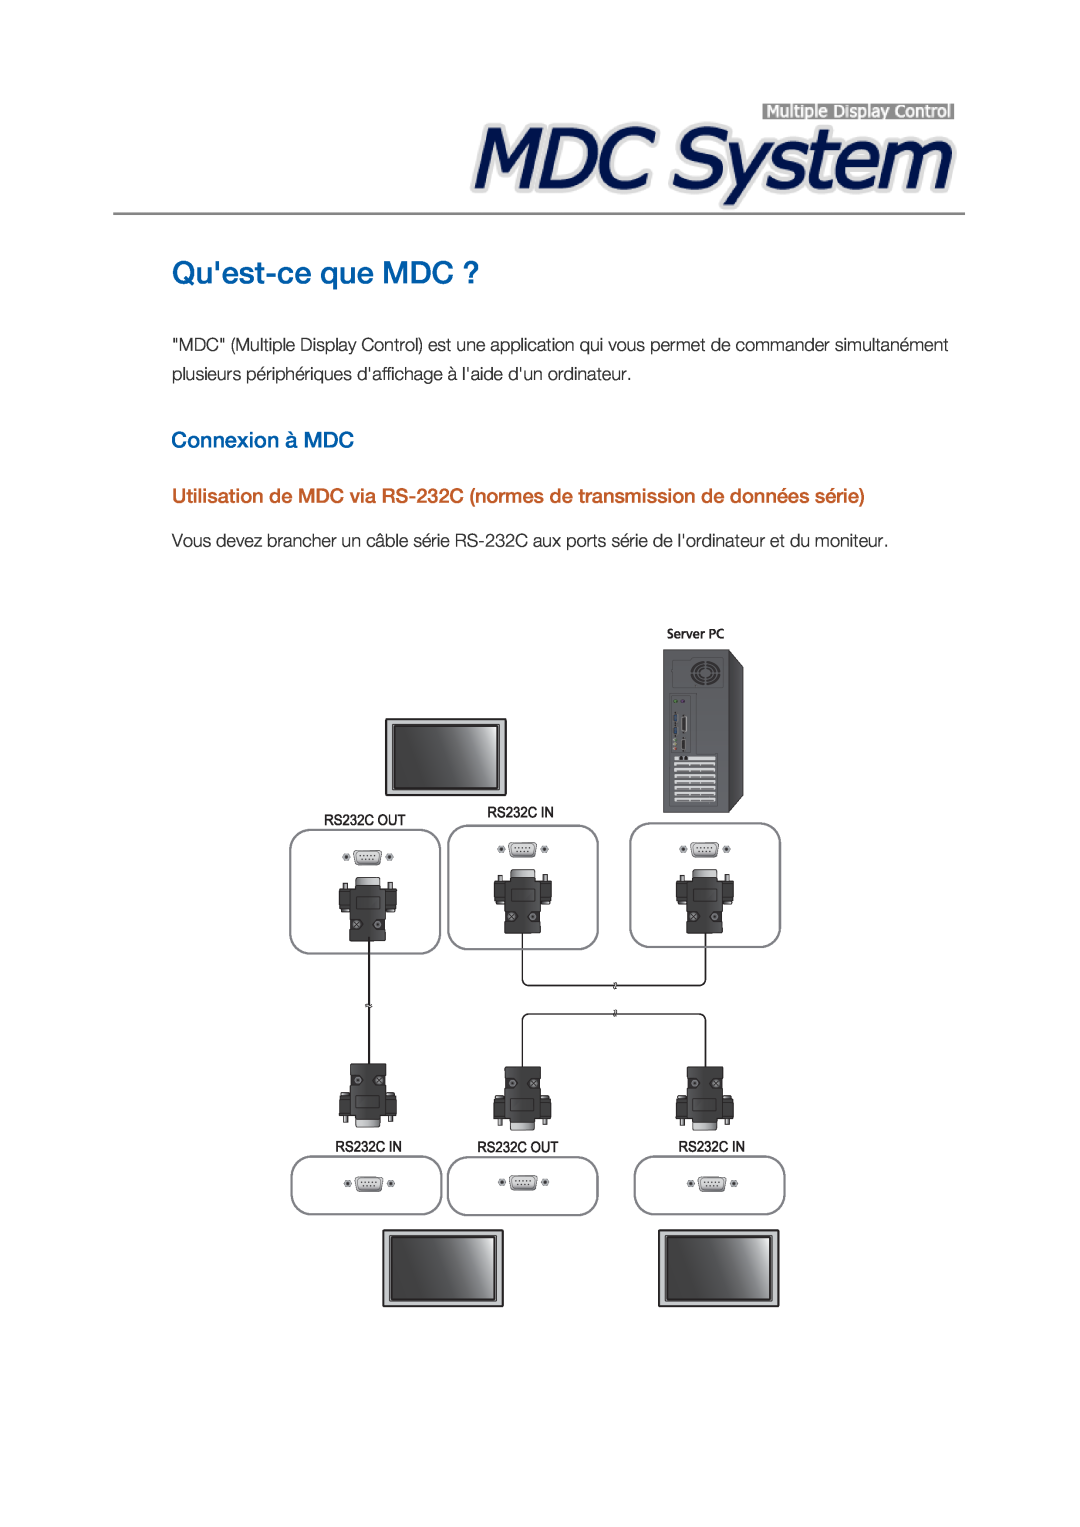 Samsung LH32CRSMBD/EN, LH32CRTMBC/EN, LH32CRSMBC/EN manual Quest-ce que MDC ?, Connexion à MDC 